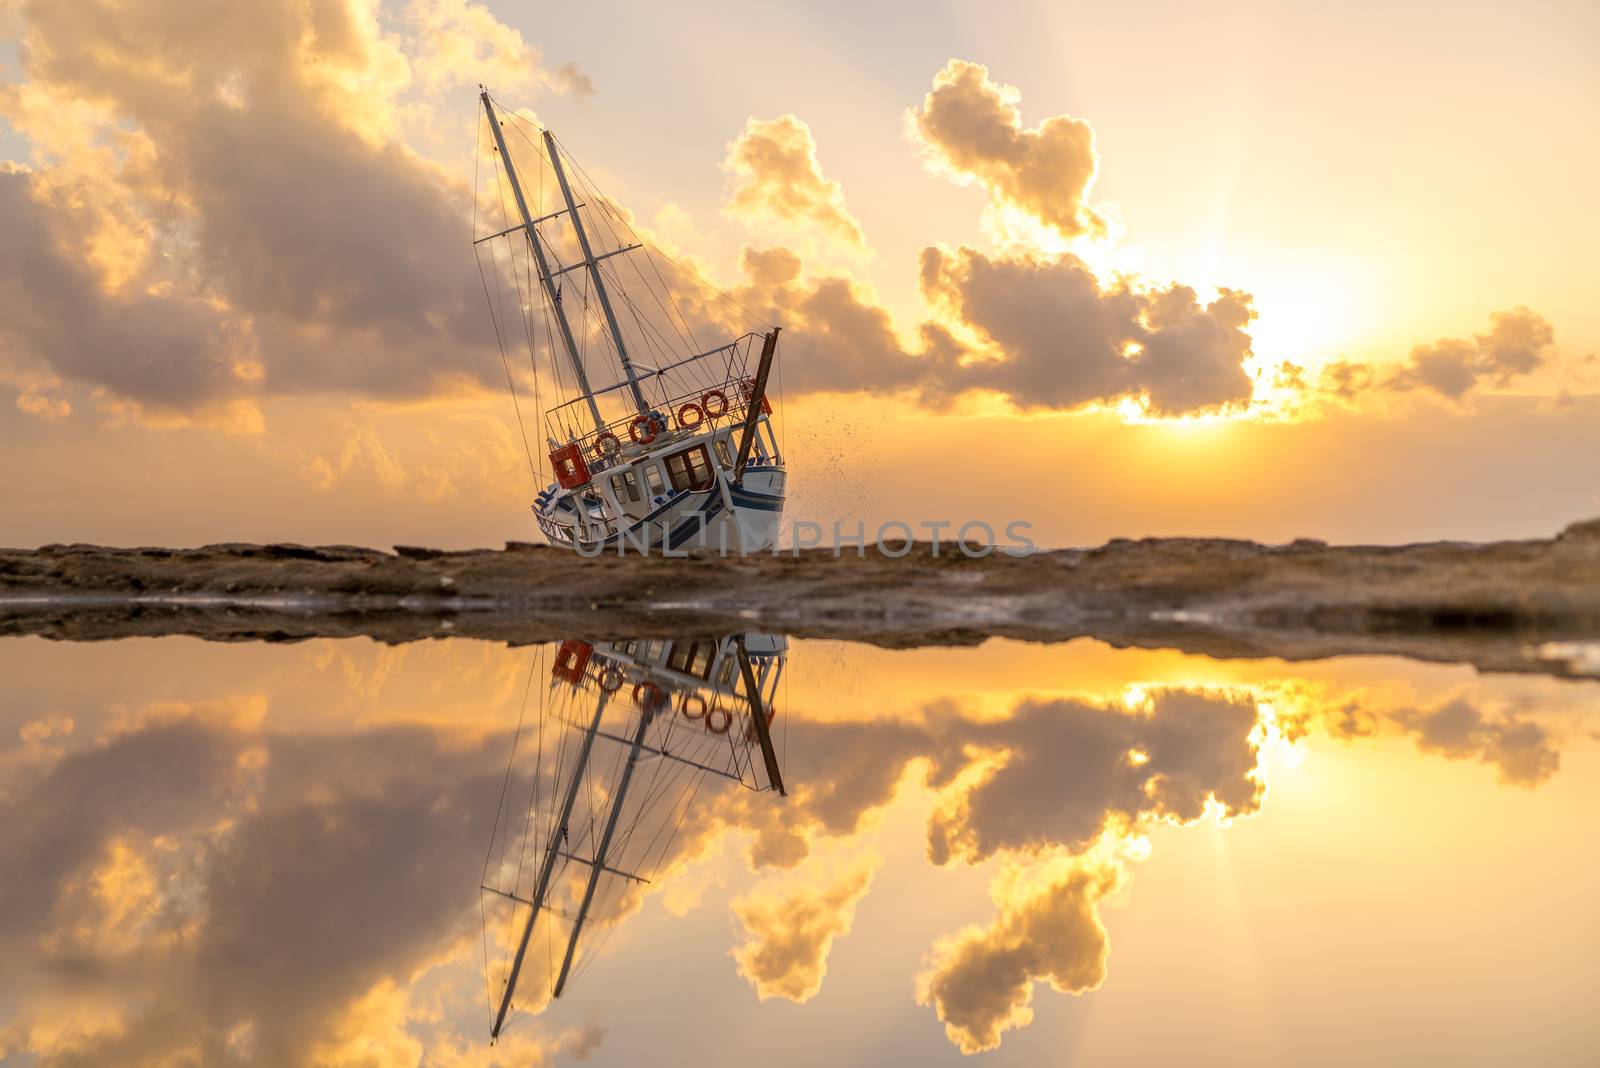 A Sailing boat wreck at sunset